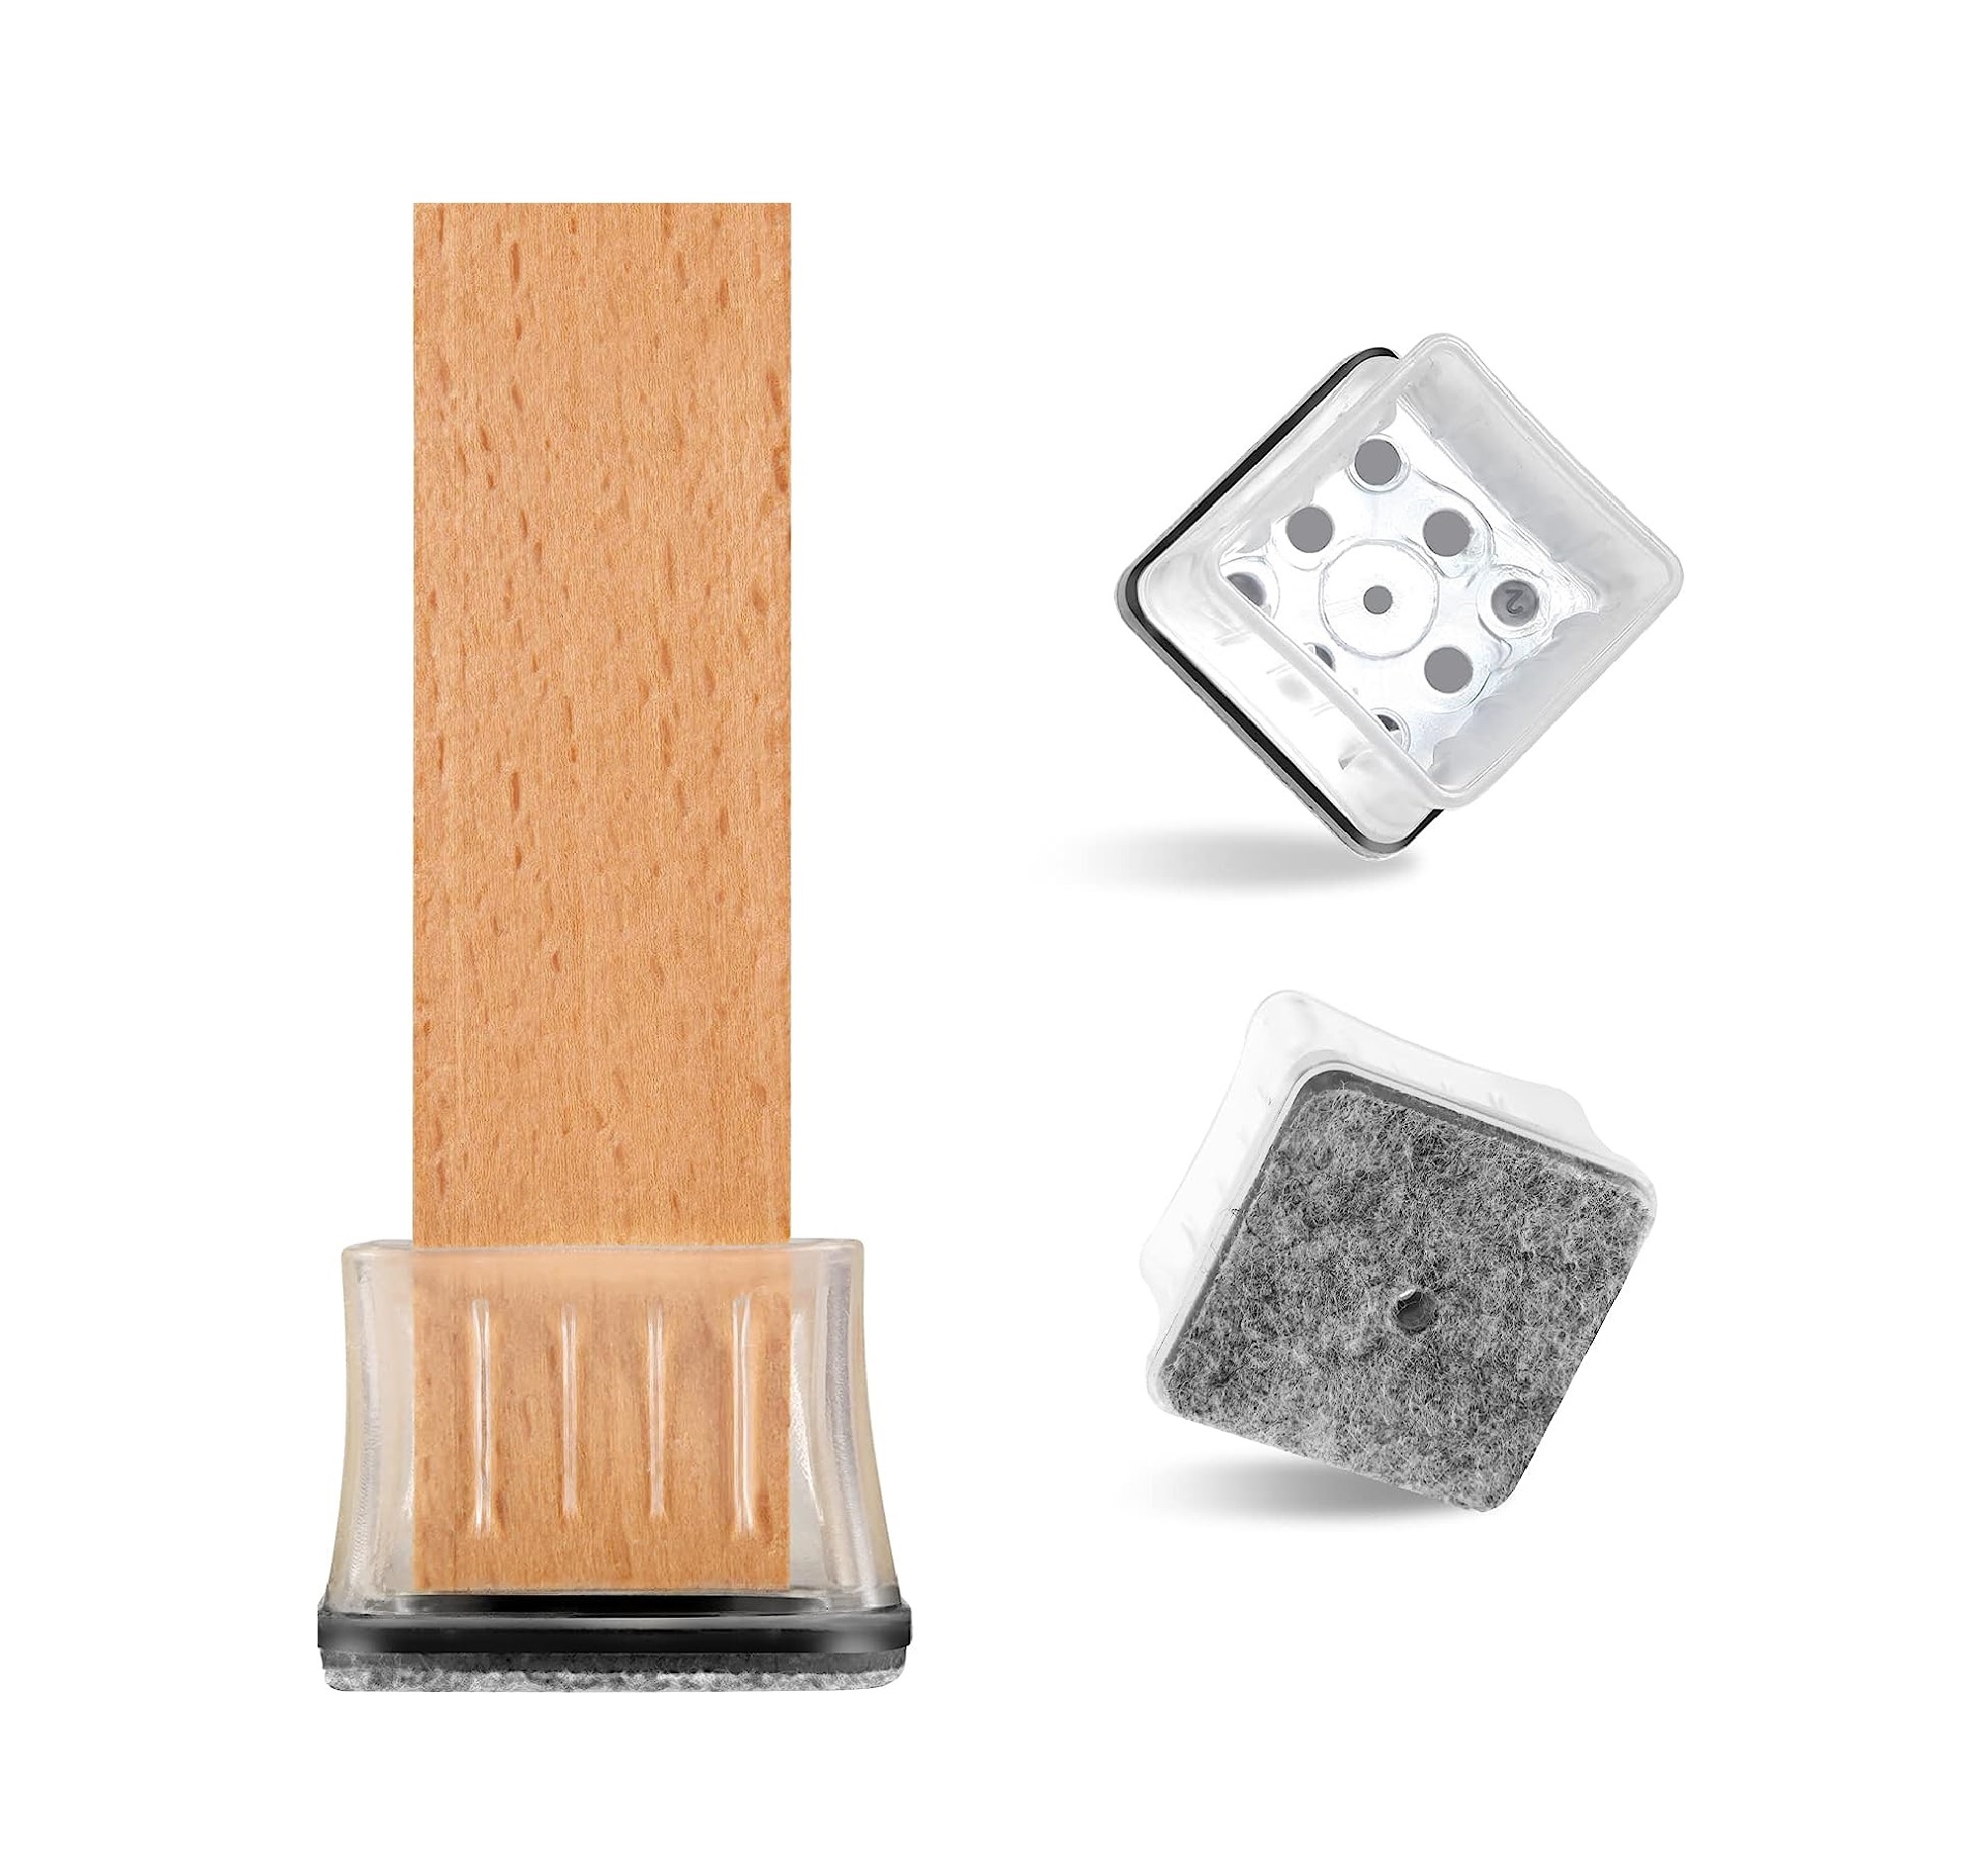 Descubre estas fundas de silicona ajustables para no rayar el suelo de tu  casa con las sillas o cualquier otro mobiliario